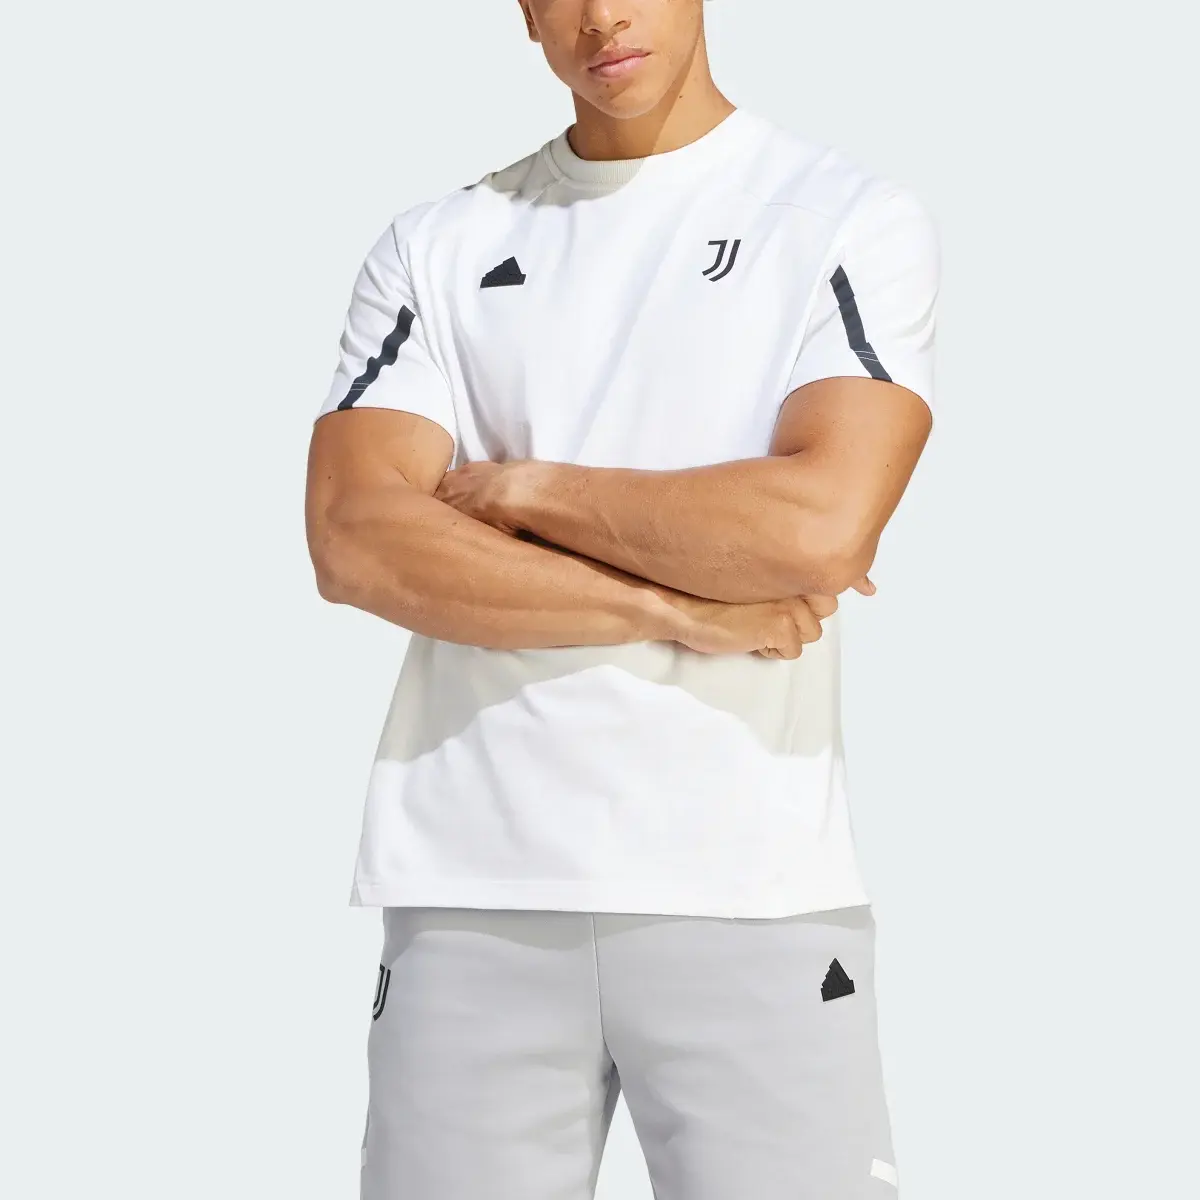 Adidas T-shirt Designed for Gameday da Juventus. 1